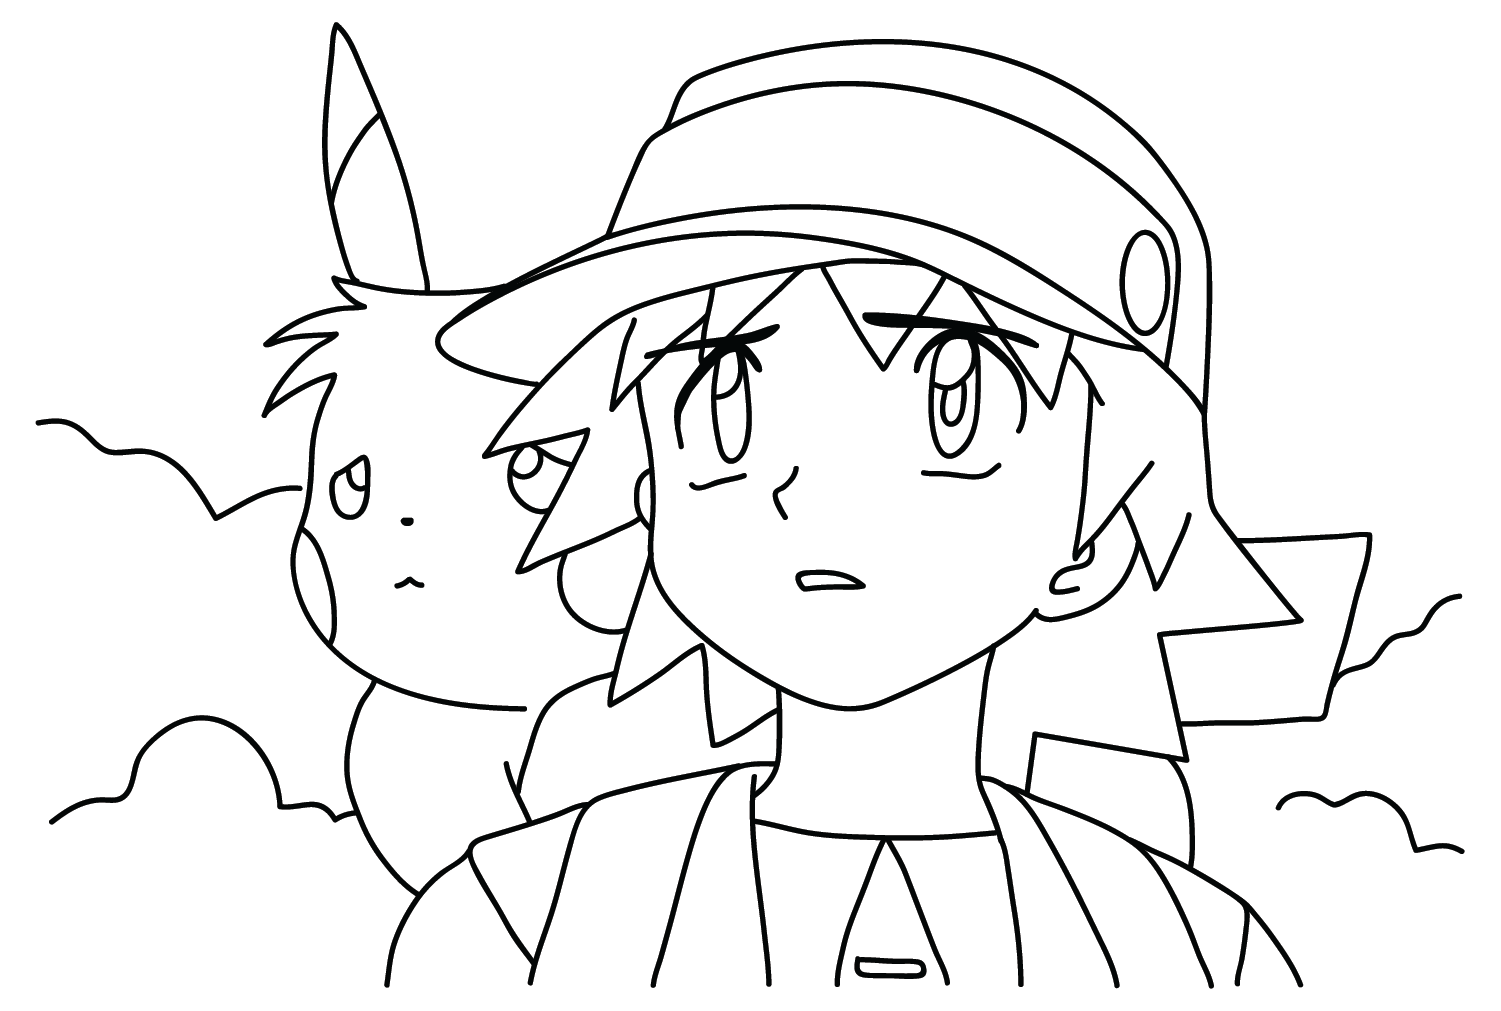 Imagens de Pikachu e Ritchie para colorir do Pokémon Ritchie